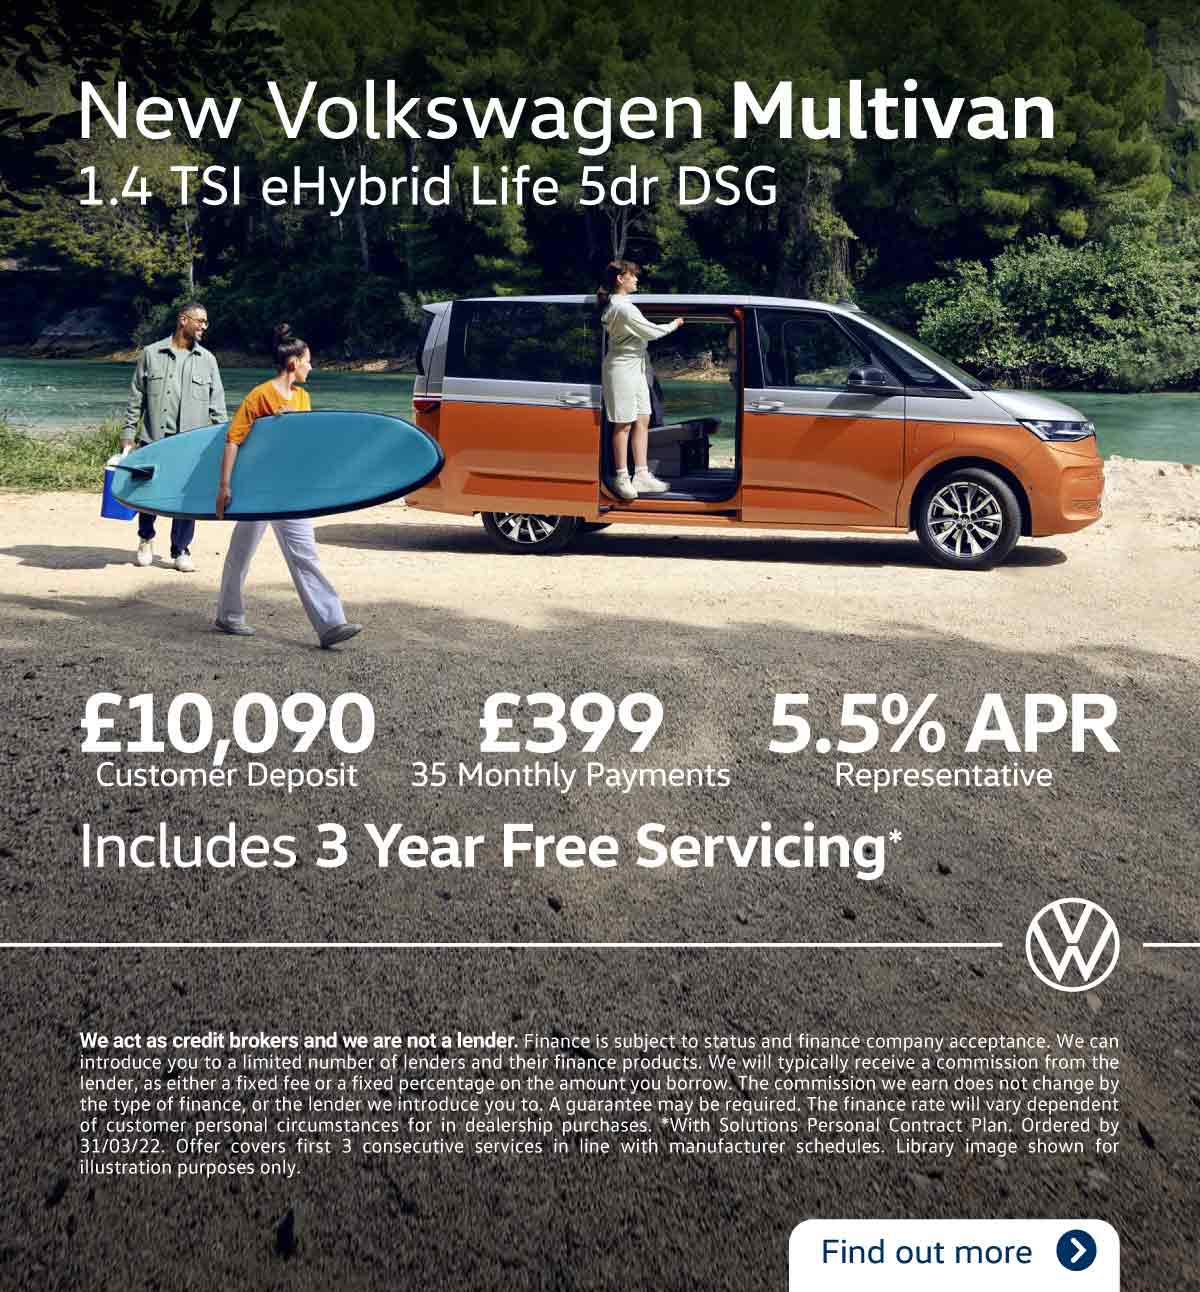 Volkswagen Multivan 080322